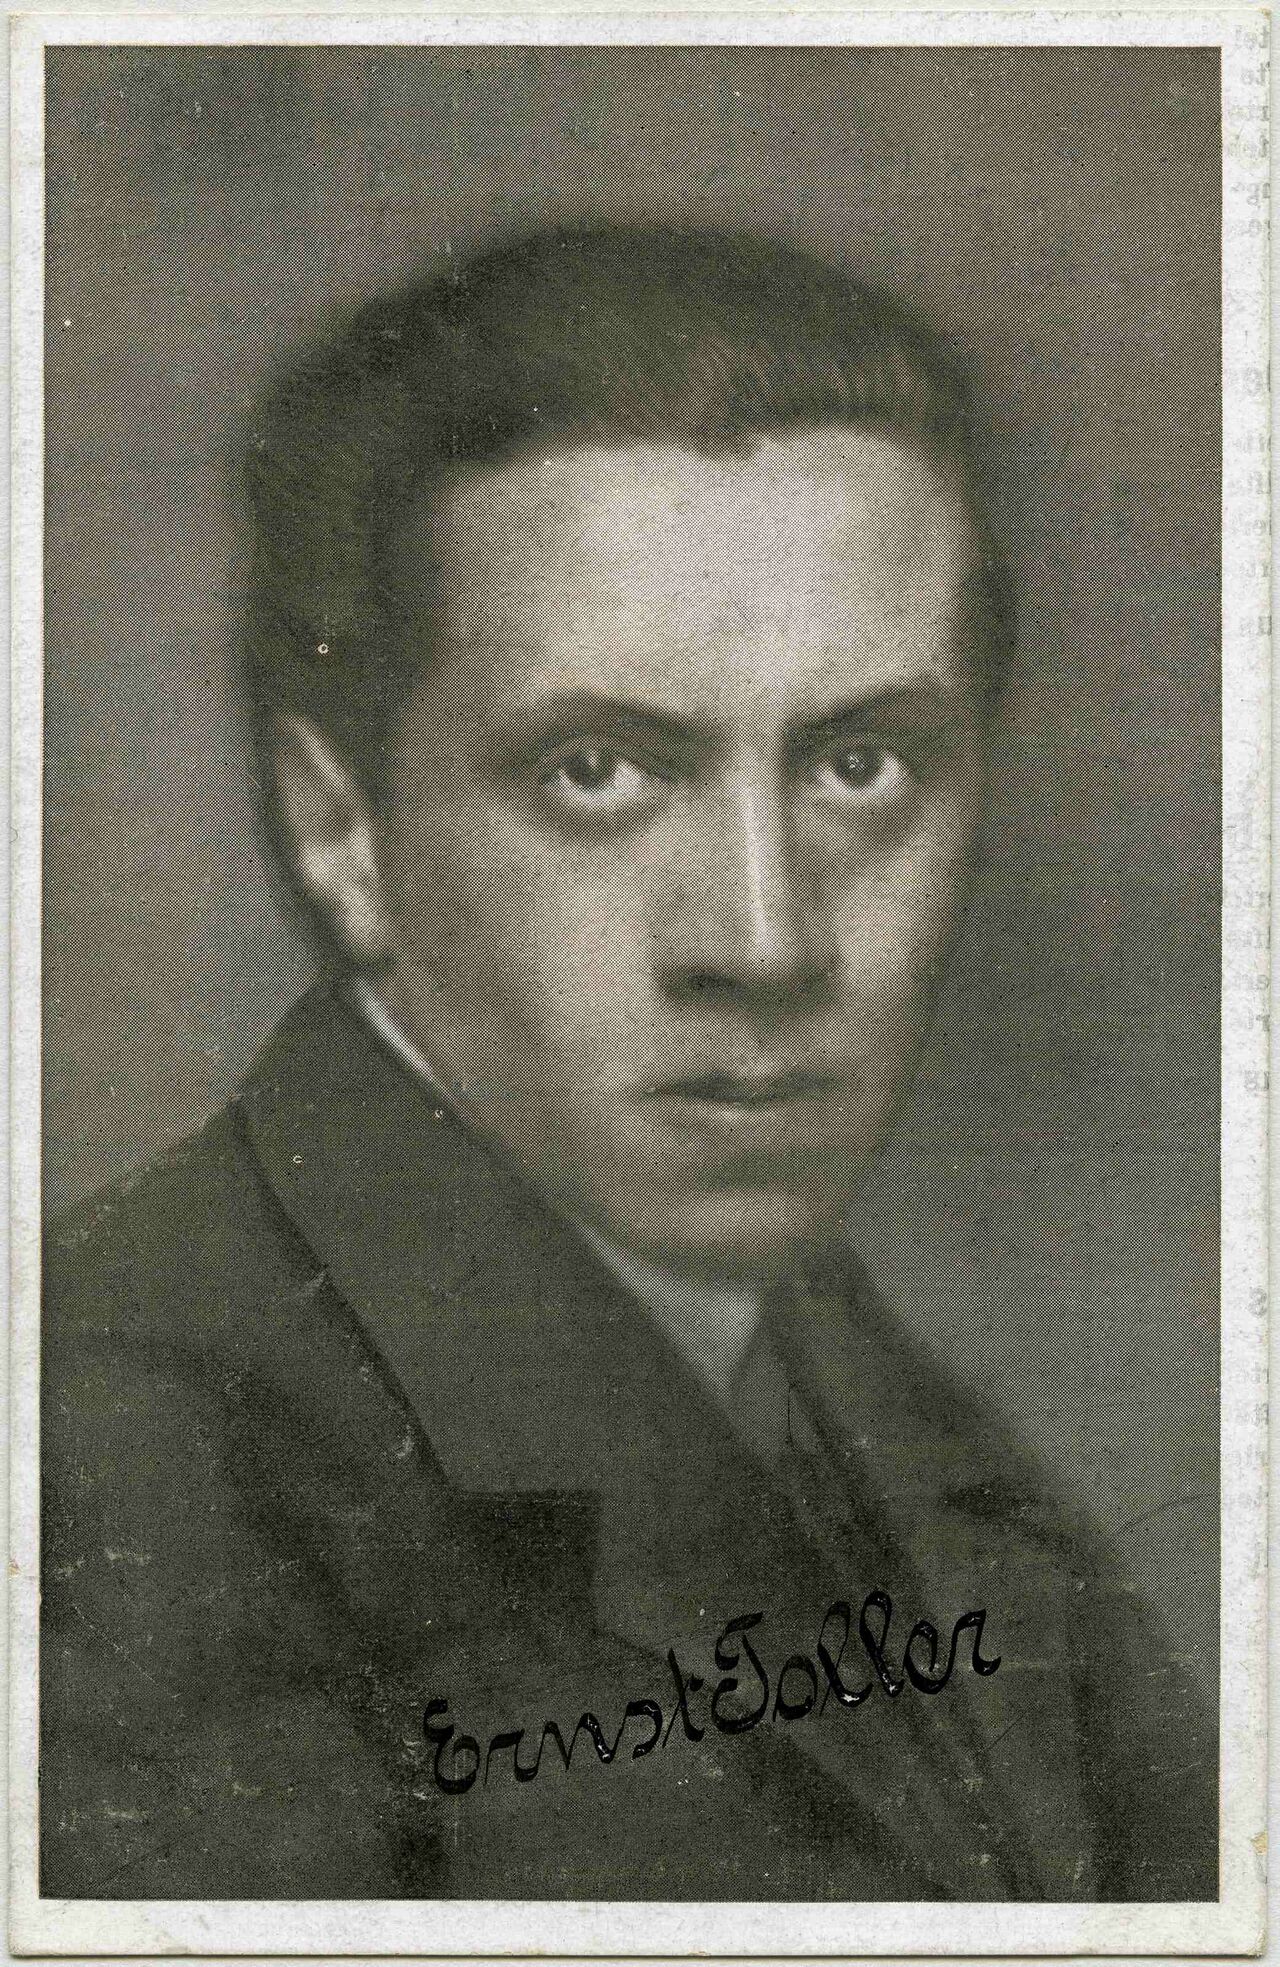 „Freiheitspostkarte Nr. 7“ der USPD mit einer Porträtfotografie des Schriftstellers Ernst Toller (1893-1939), Postkarte / Fotografie, Juli 1919